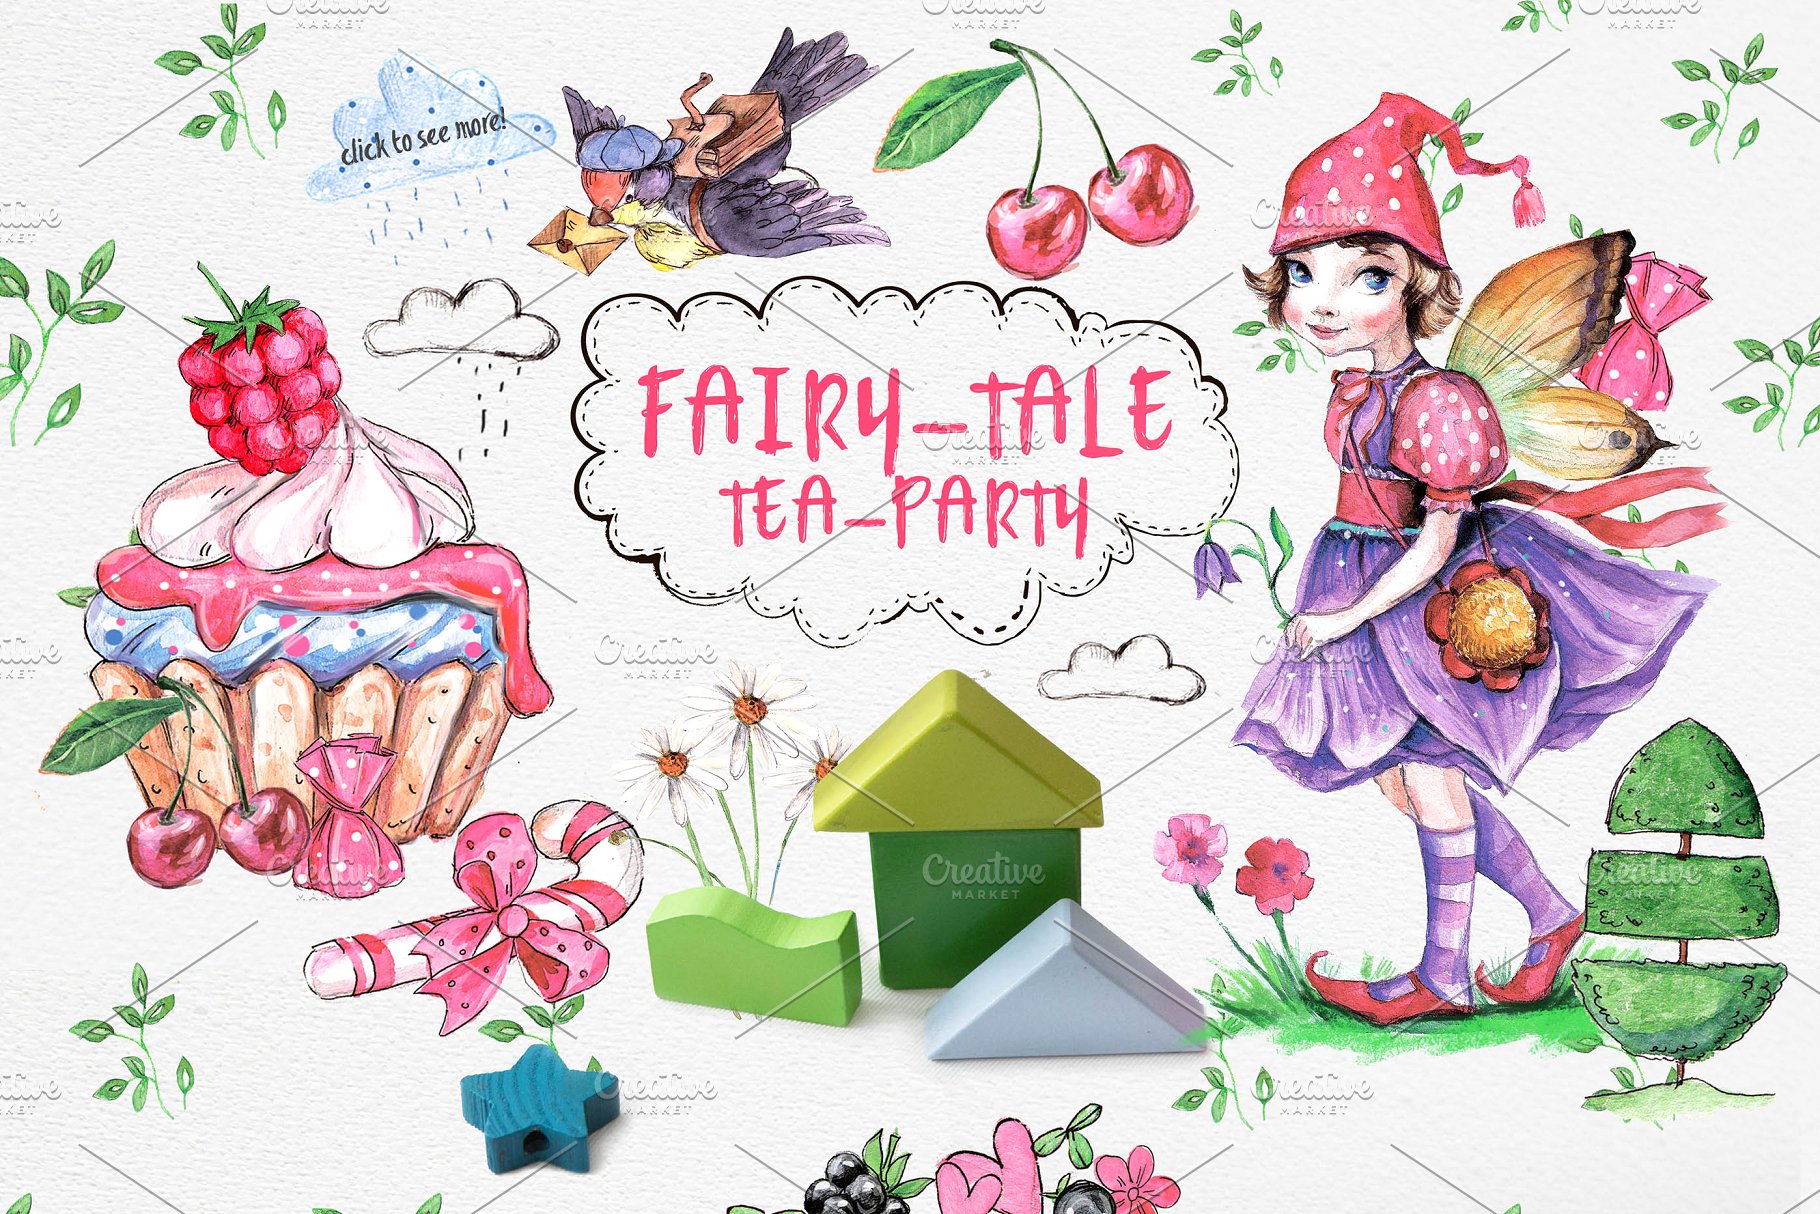 超级可爱儿童主题设计素材合集[2.24GB] FAIRY-TALE LAND插图8